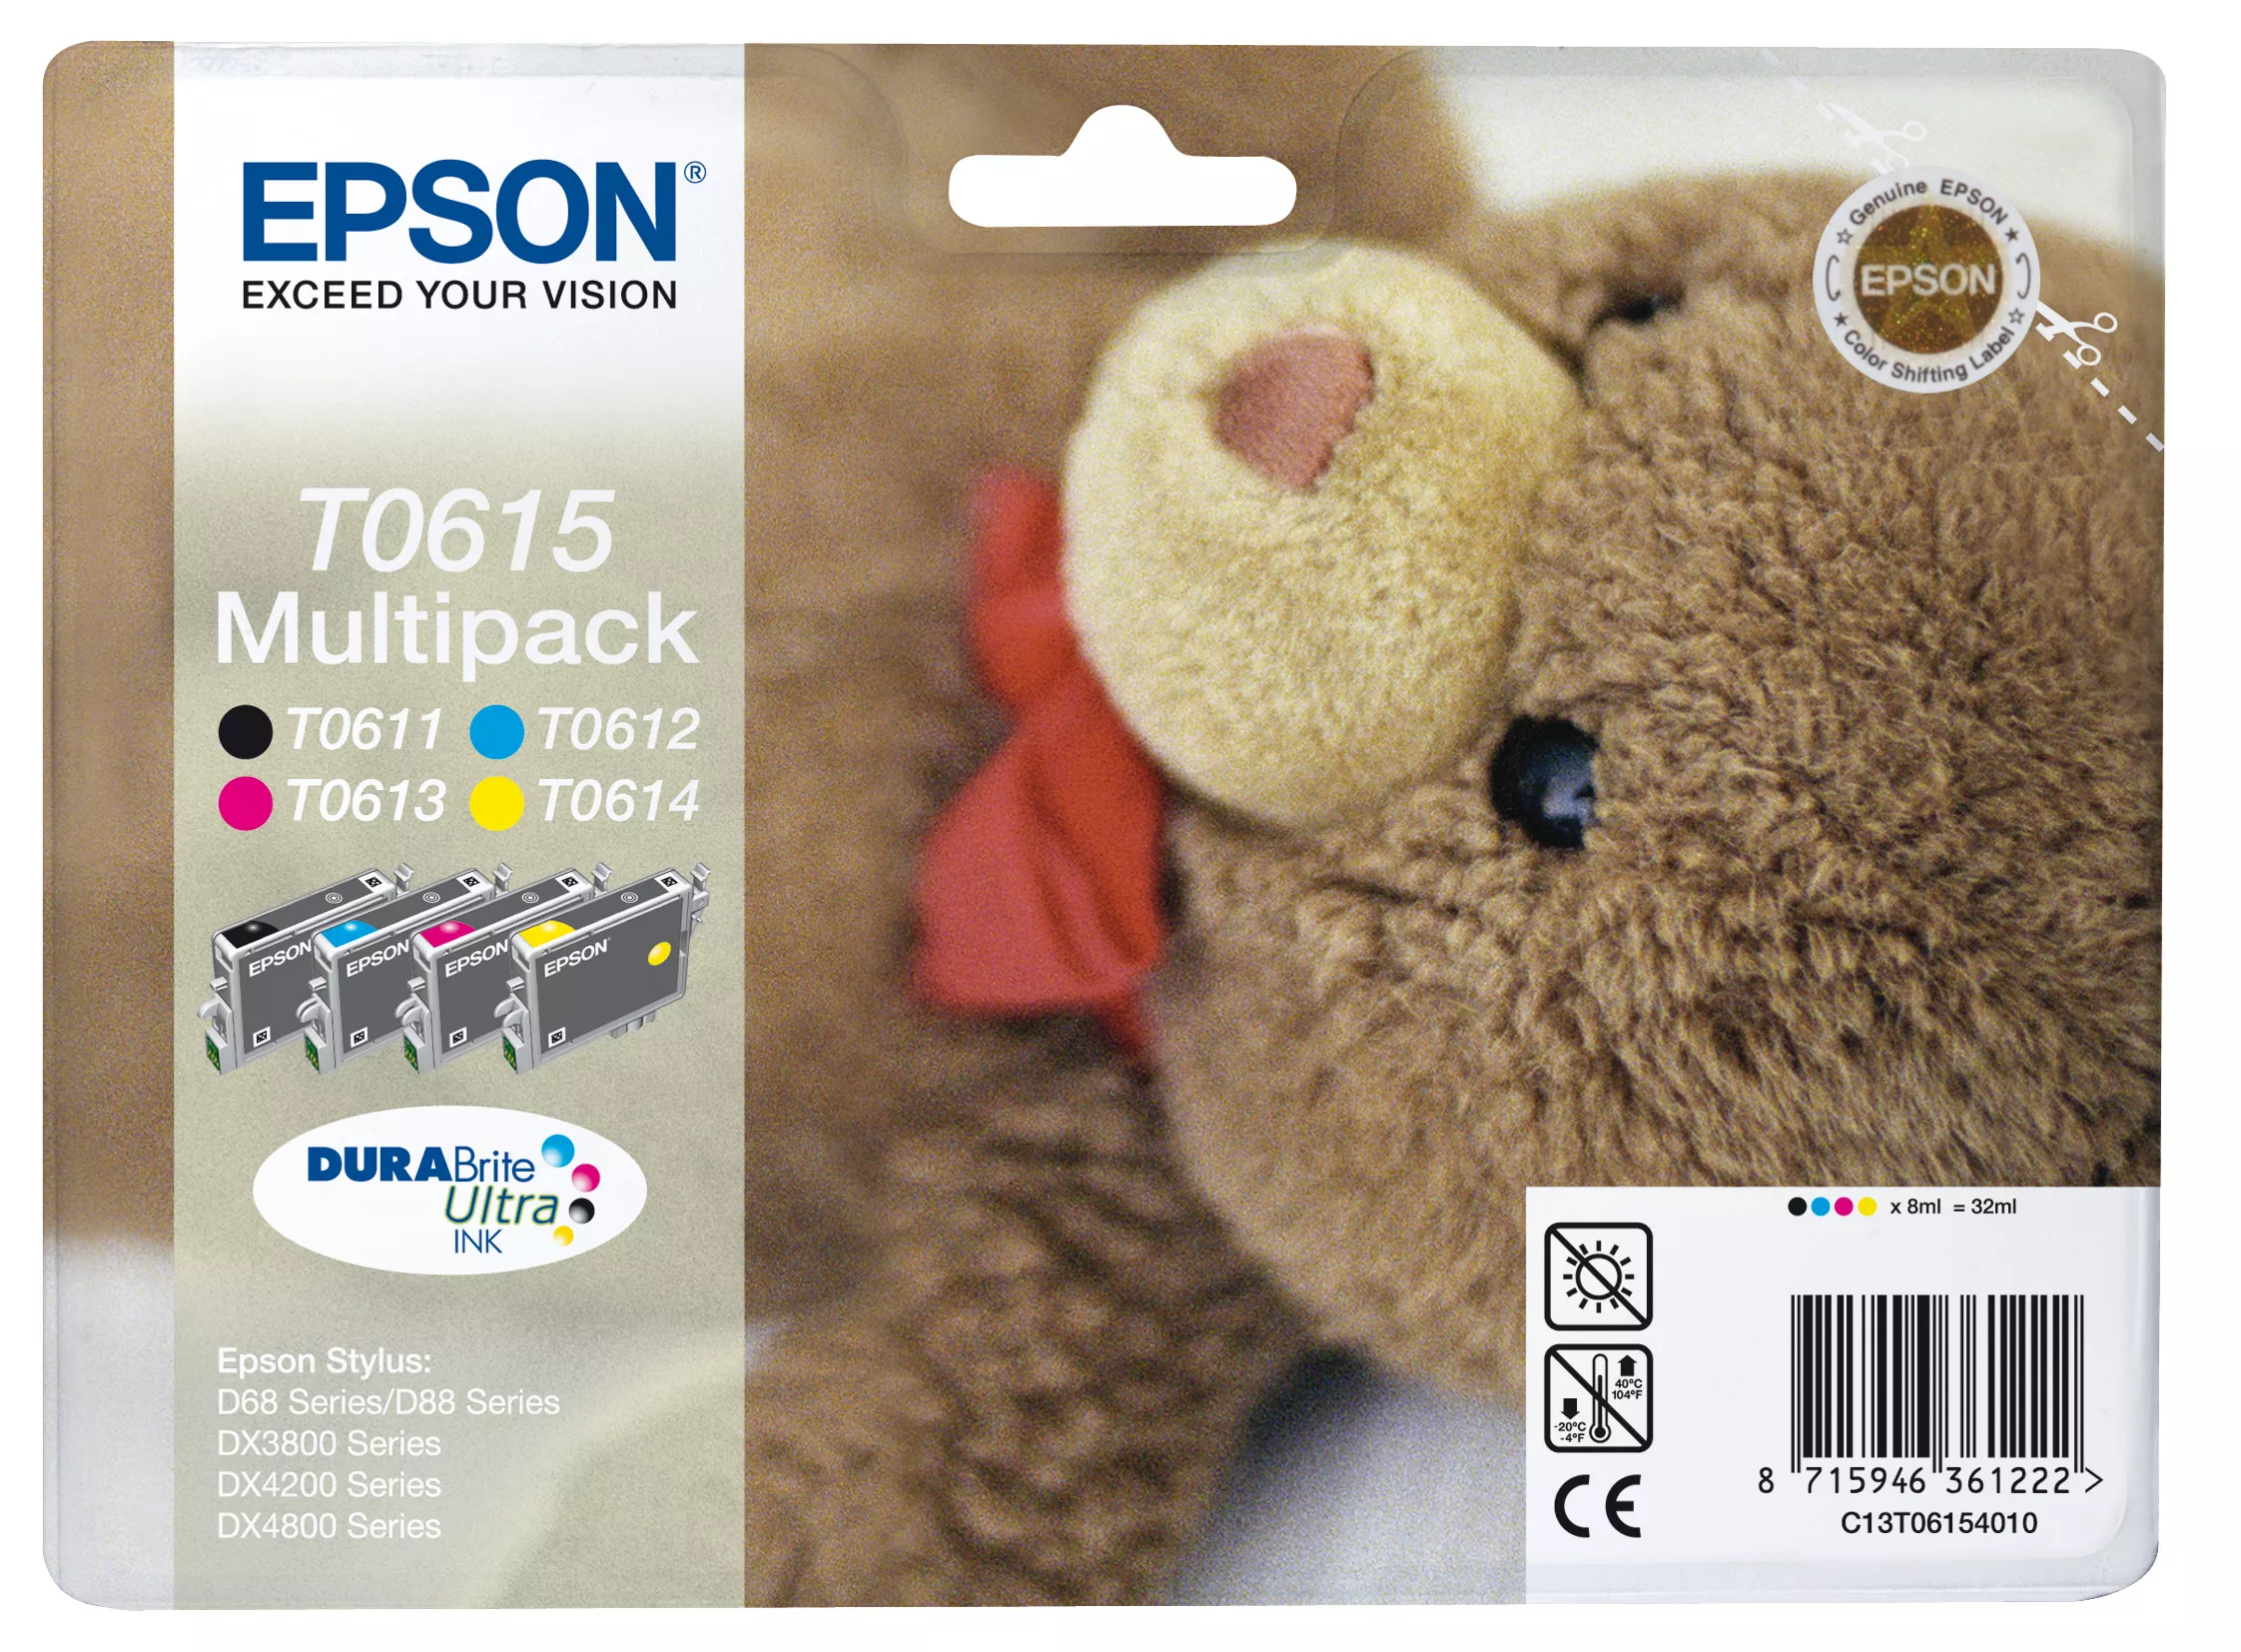 Vente EPSON T0615 cartouche d encre noir et tricolore Epson au meilleur prix - visuel 2